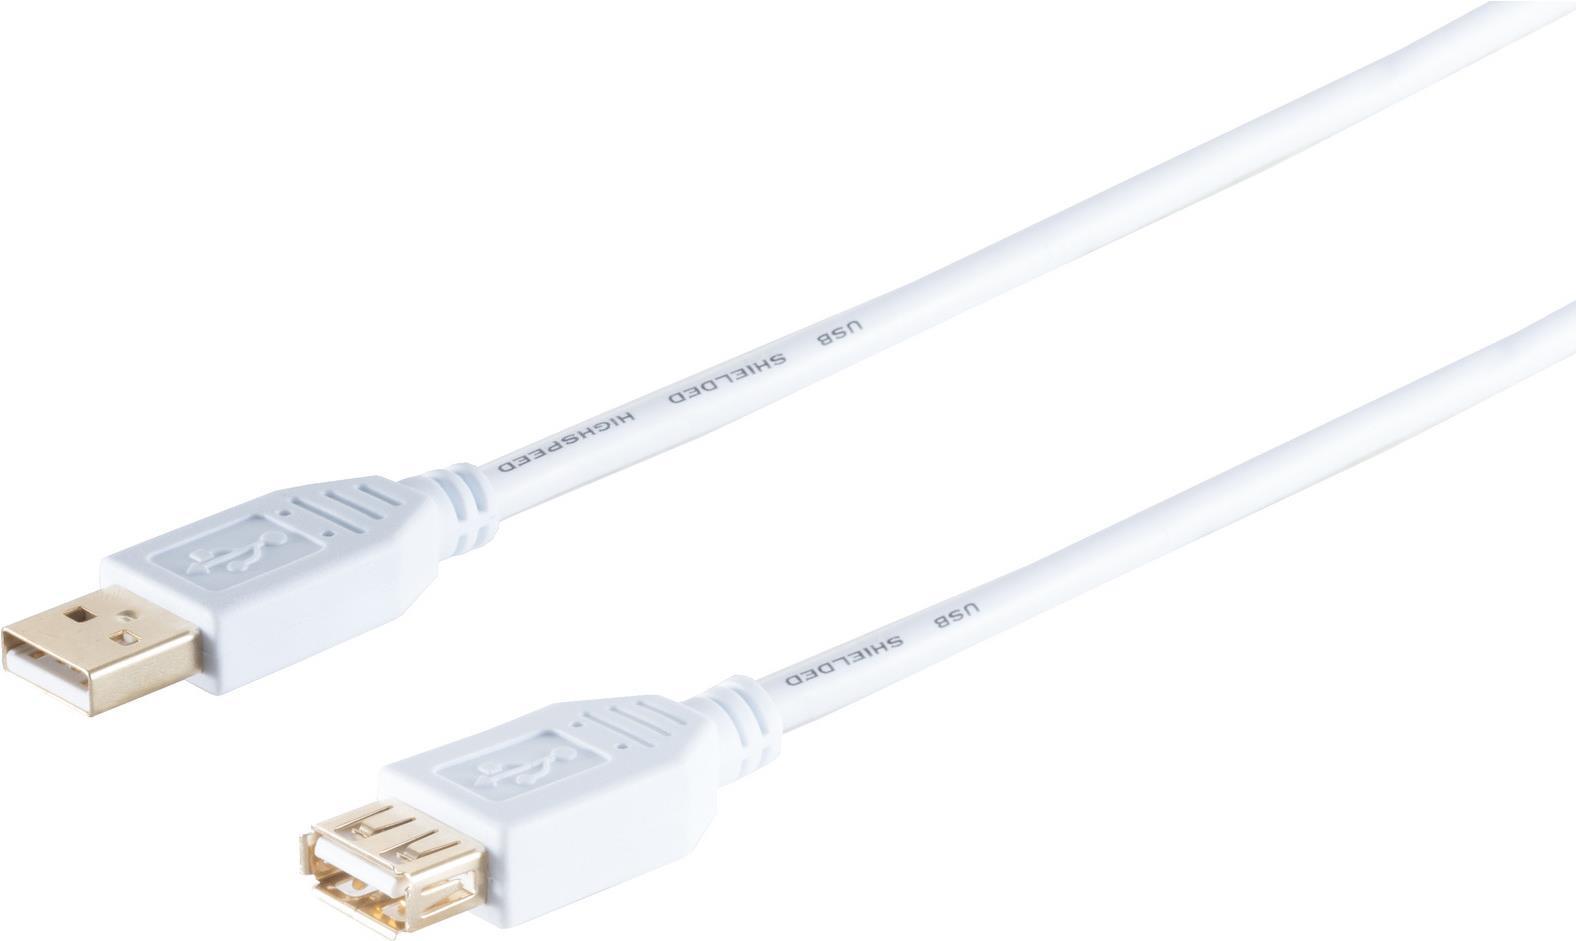 S/CONN maximum connectivity USB High Speed 2.0 Verlängerung, A Stecker auf A Buchse, vergoldete Kontakte, USB 2.0, weiß, 1,8m (77122-W)